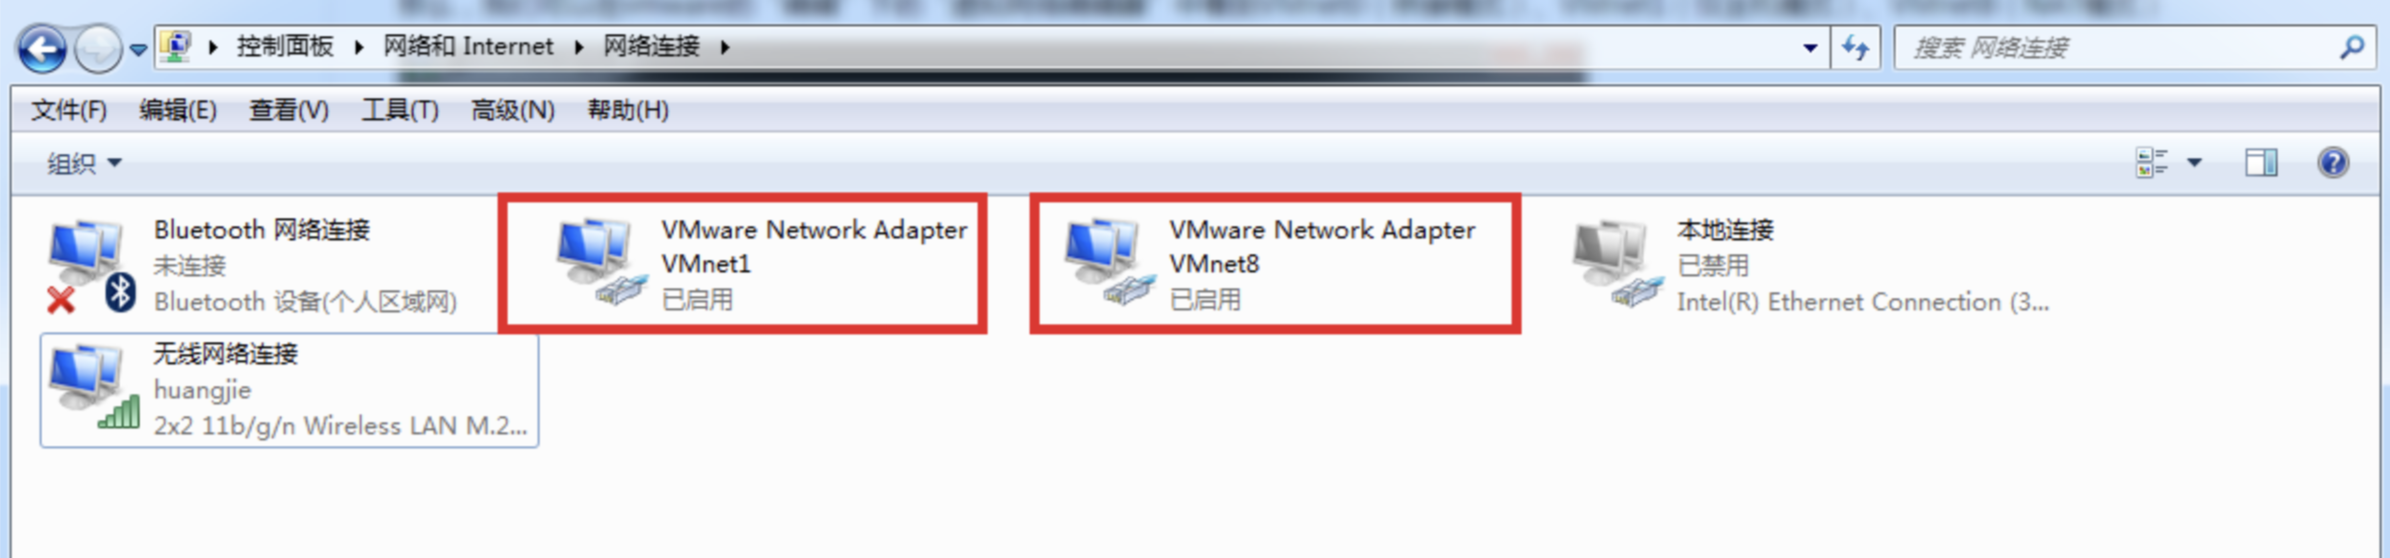 【VMware】搭建个人服务器